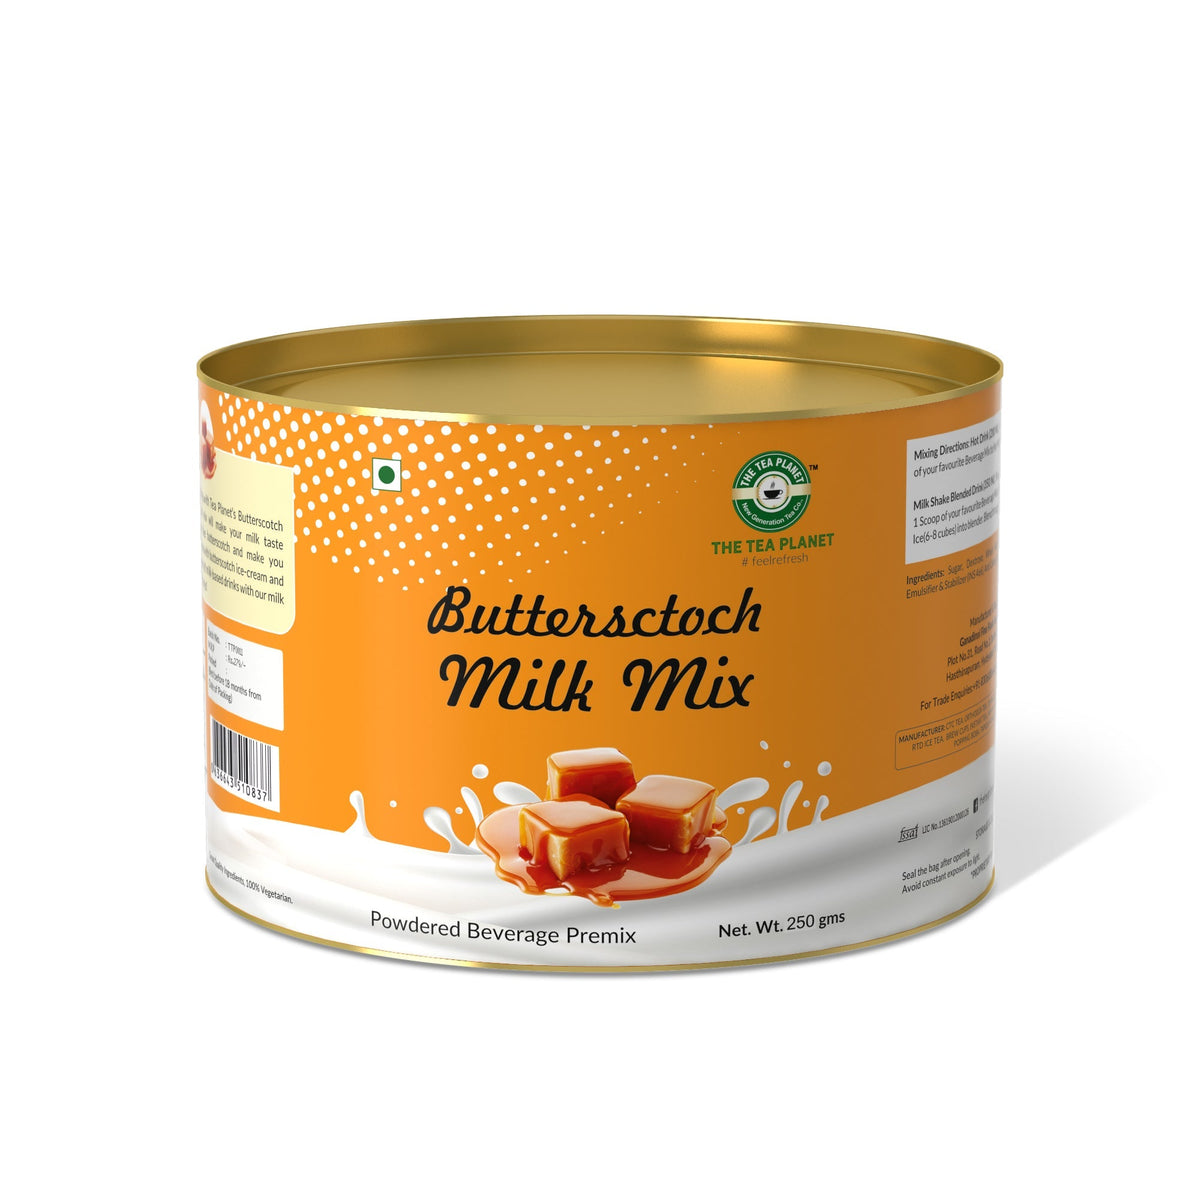 Buttersctoch Flavor Milk Mix - 400 gms